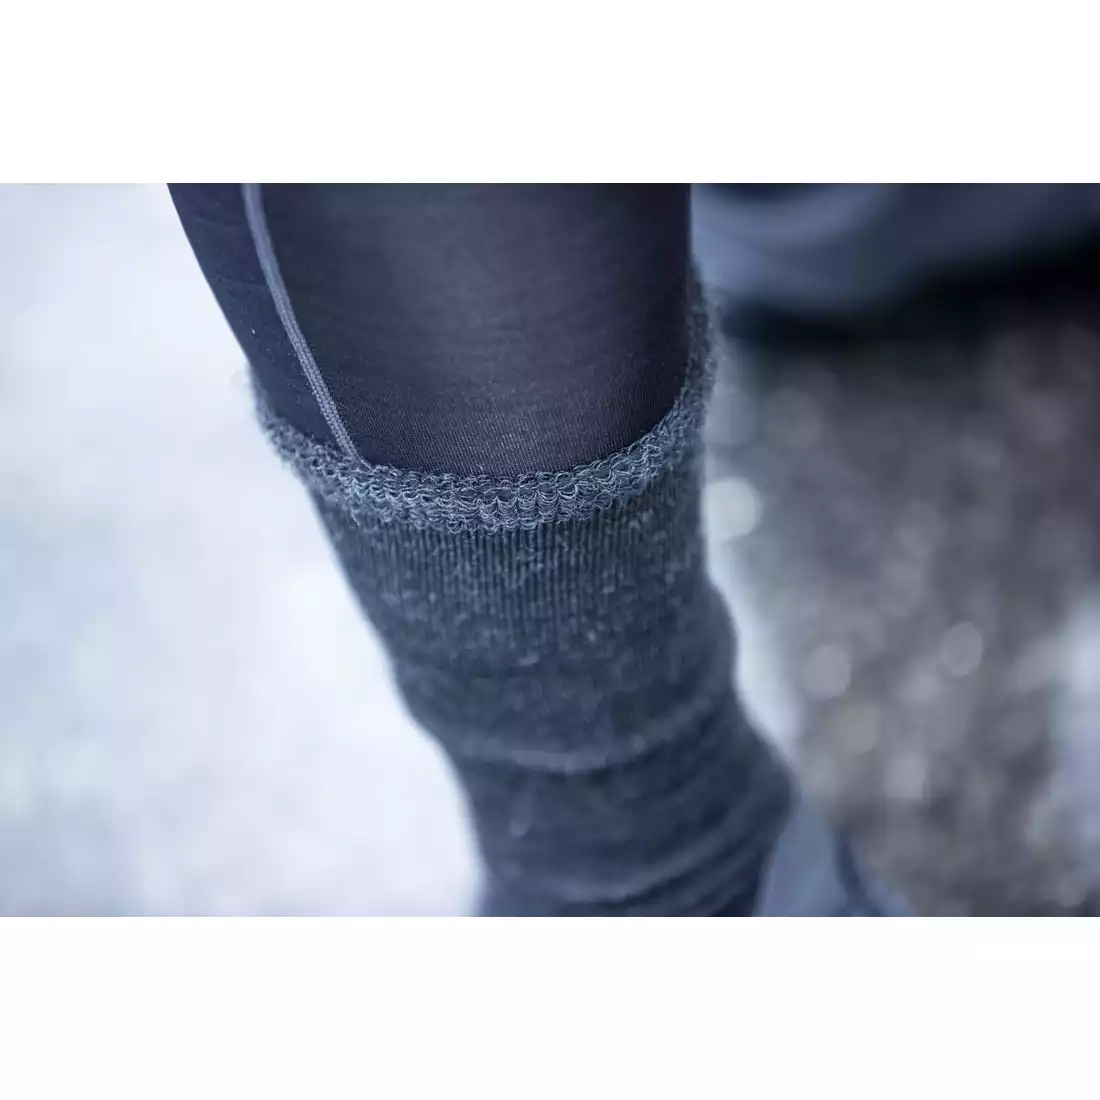 Rogelli TERRY MERINO zimné cyklistické/ športové ponožky, čierna